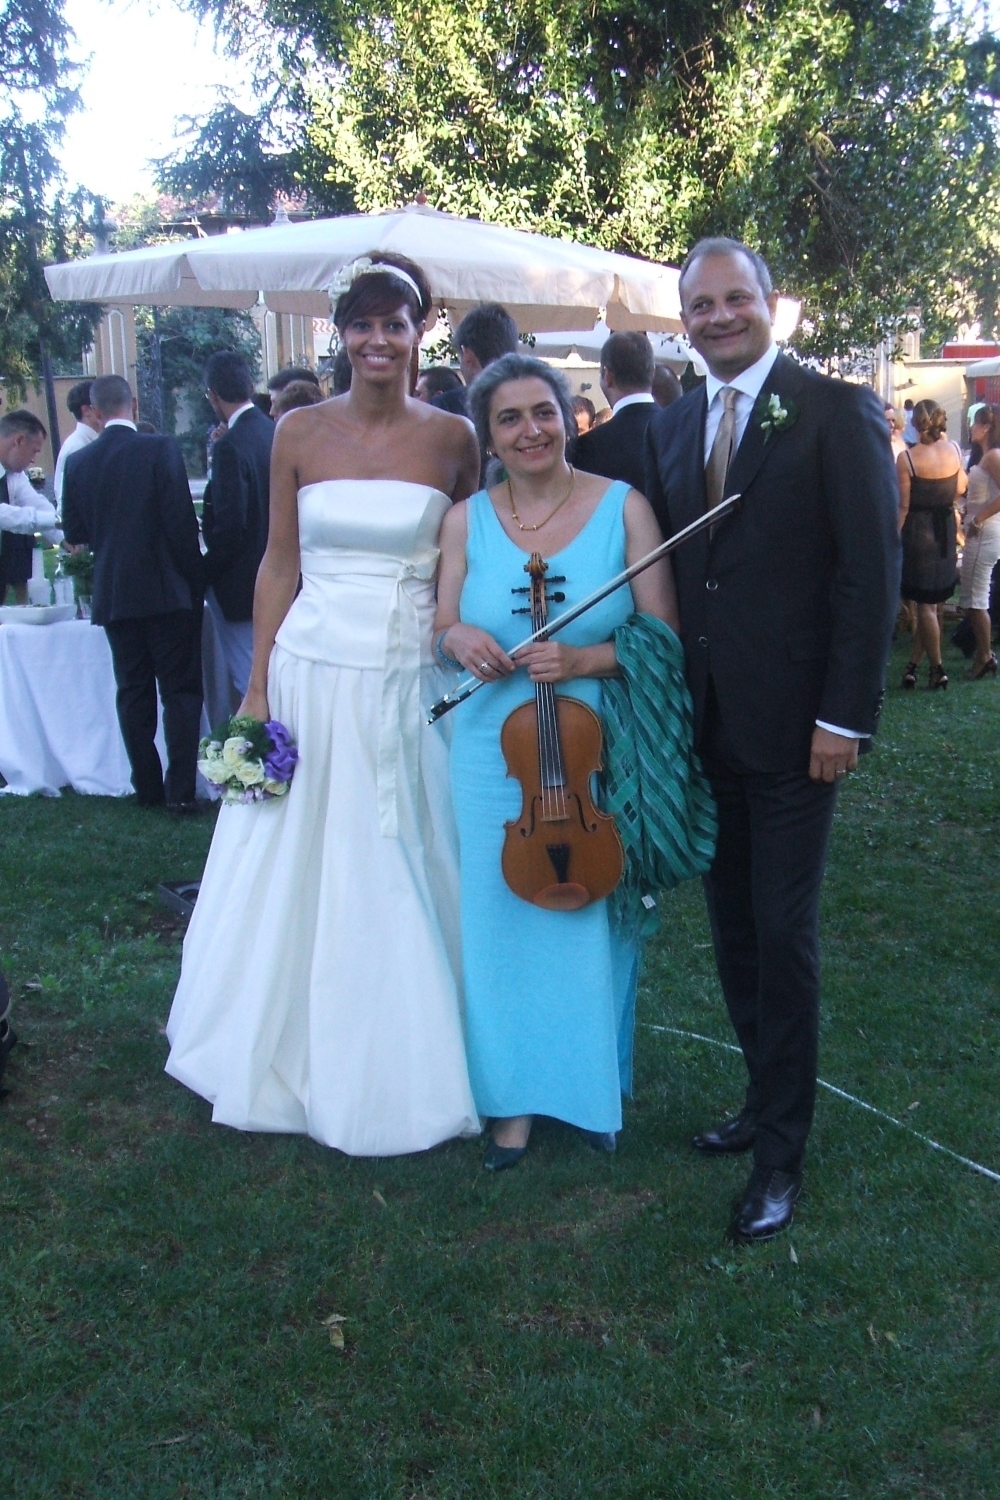 Gli sposi e la musicista che ha eseguito alla viola musica per ricevimento di nozze nel parco, Villa Caproni, Malpensa.